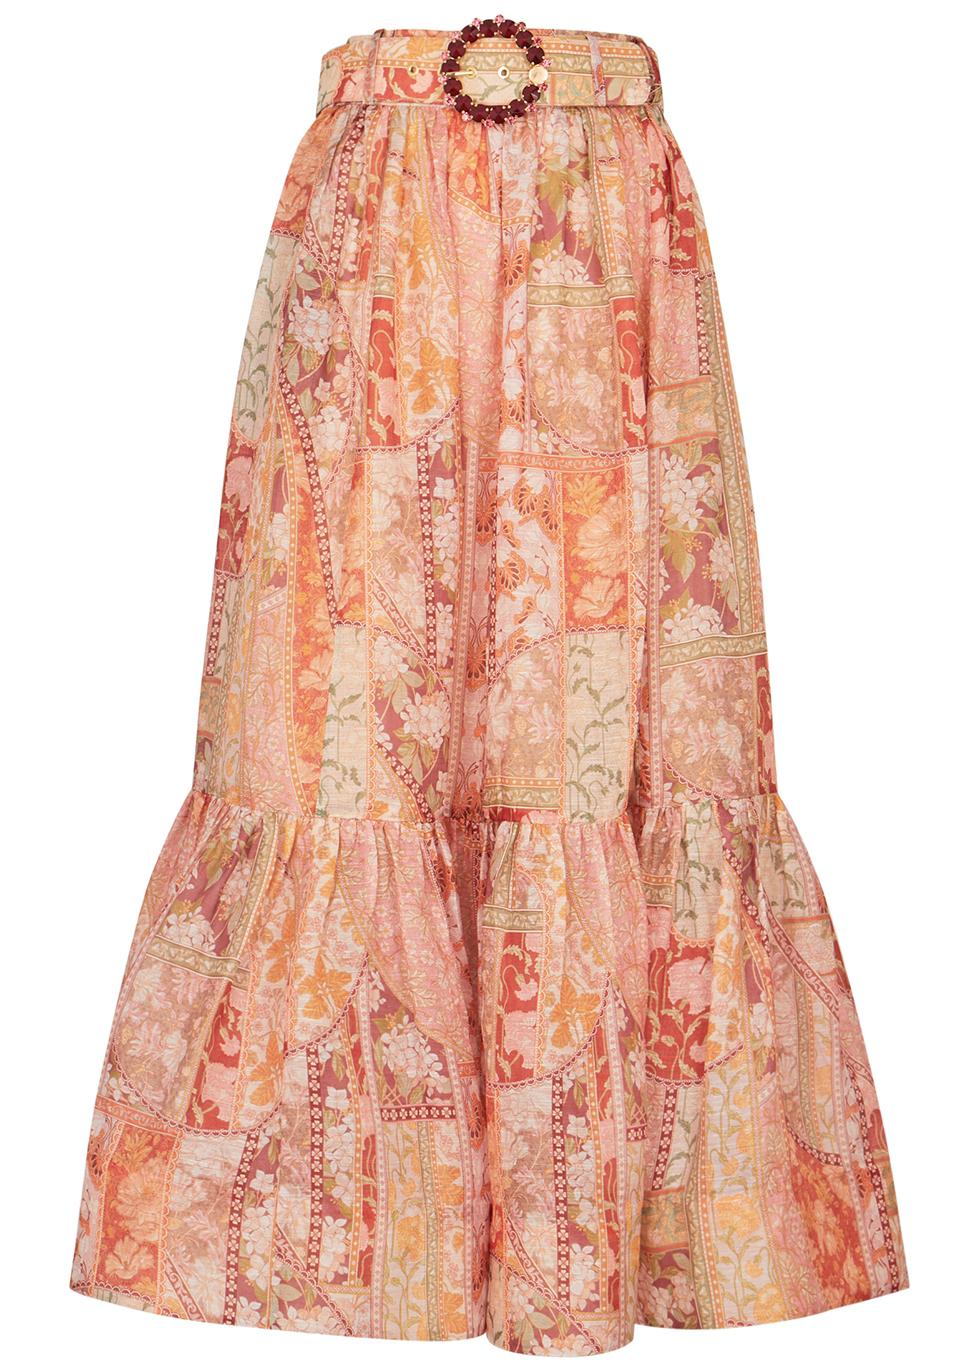 Kaleidoscope printed linen-blend skirt by ZIMMERMANN